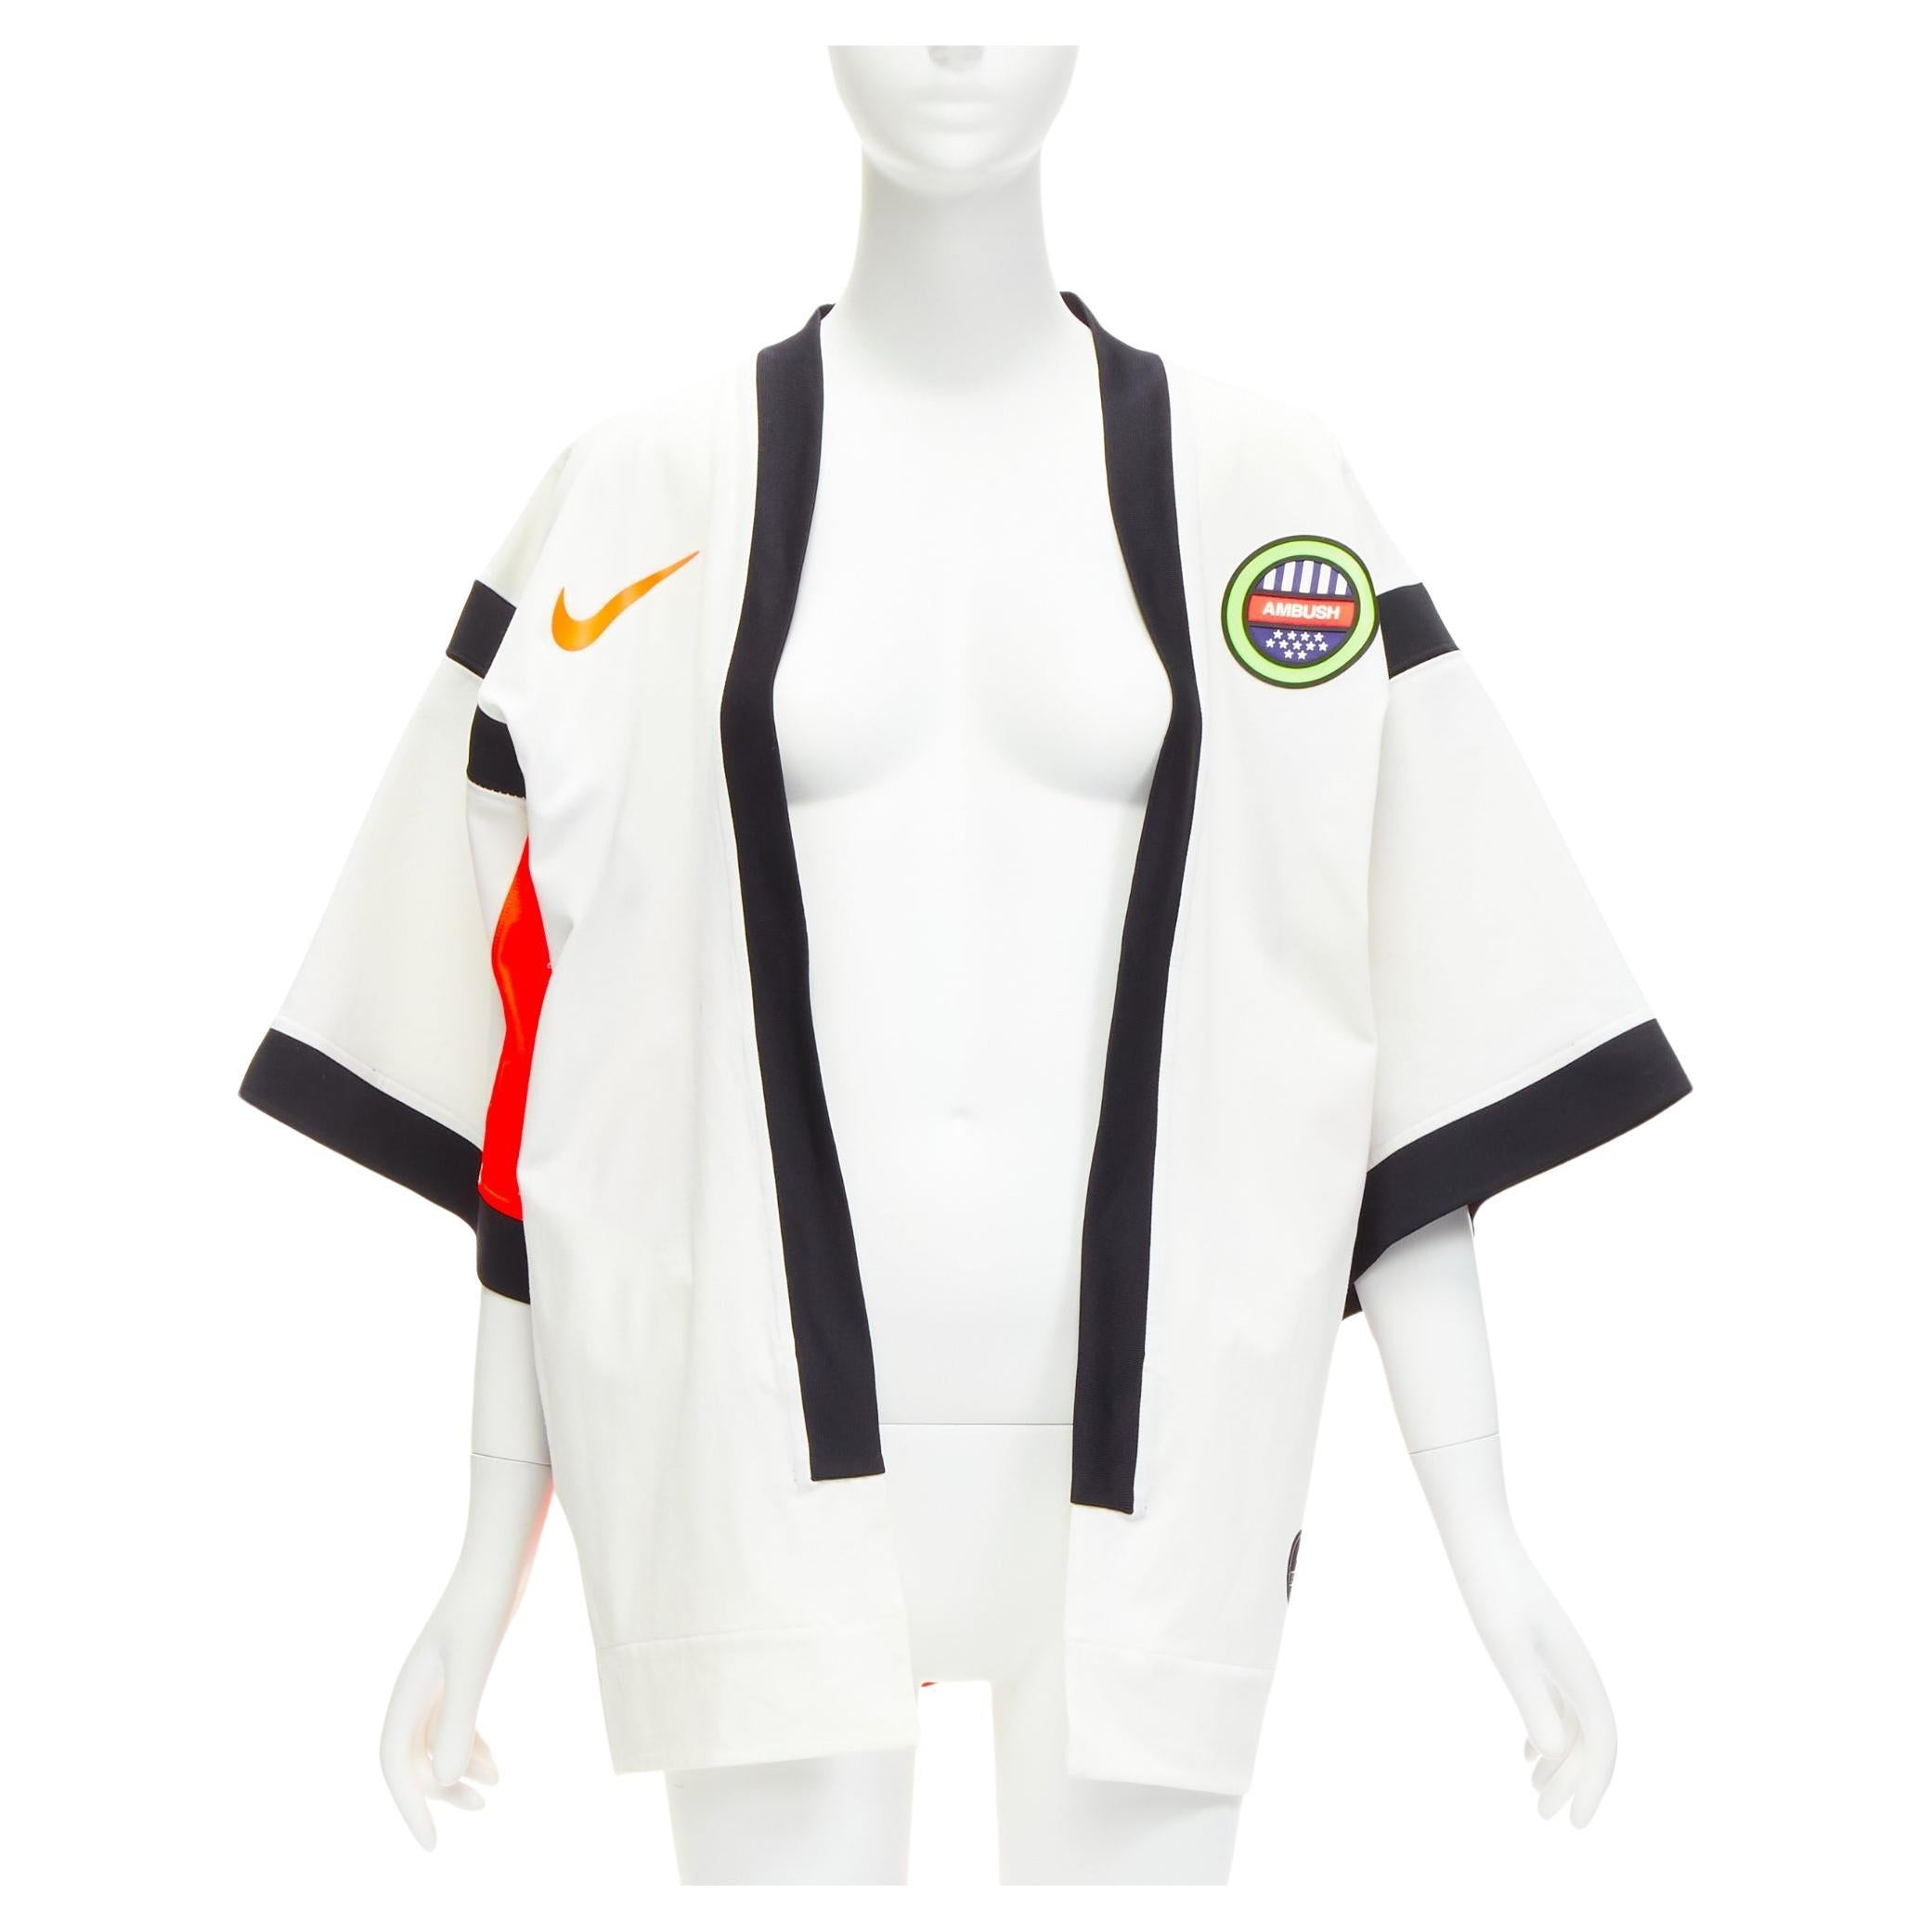 AMBUSh NIKE LAB 2019 orange logo badge kimono sleeve football jersey jacket XS For Sale